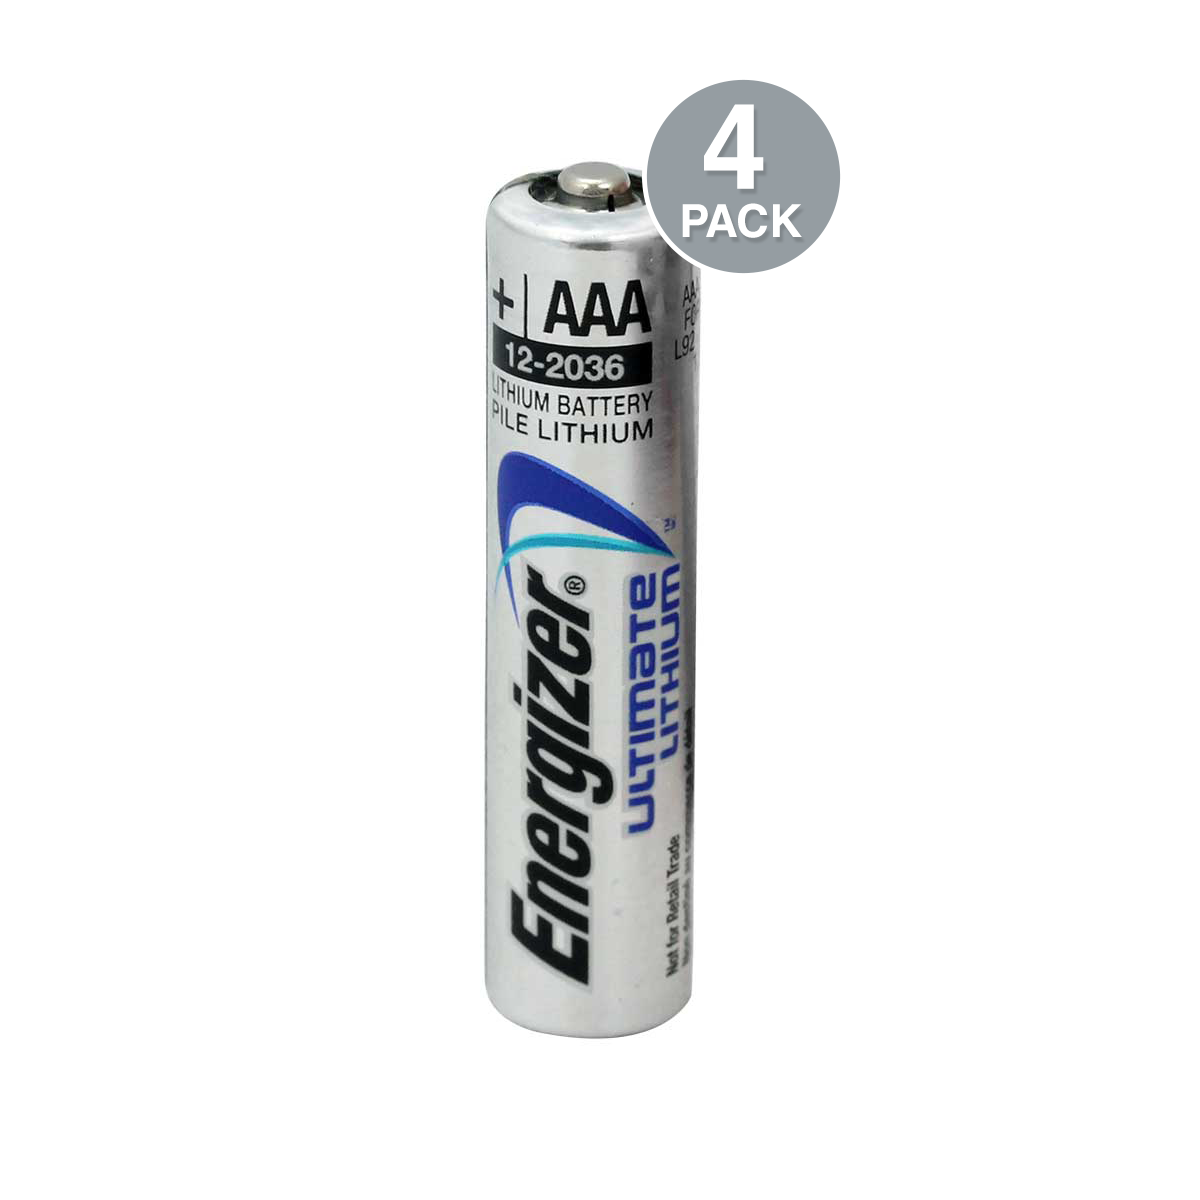 Energizer AAA 1.5V Lithium 4pcs